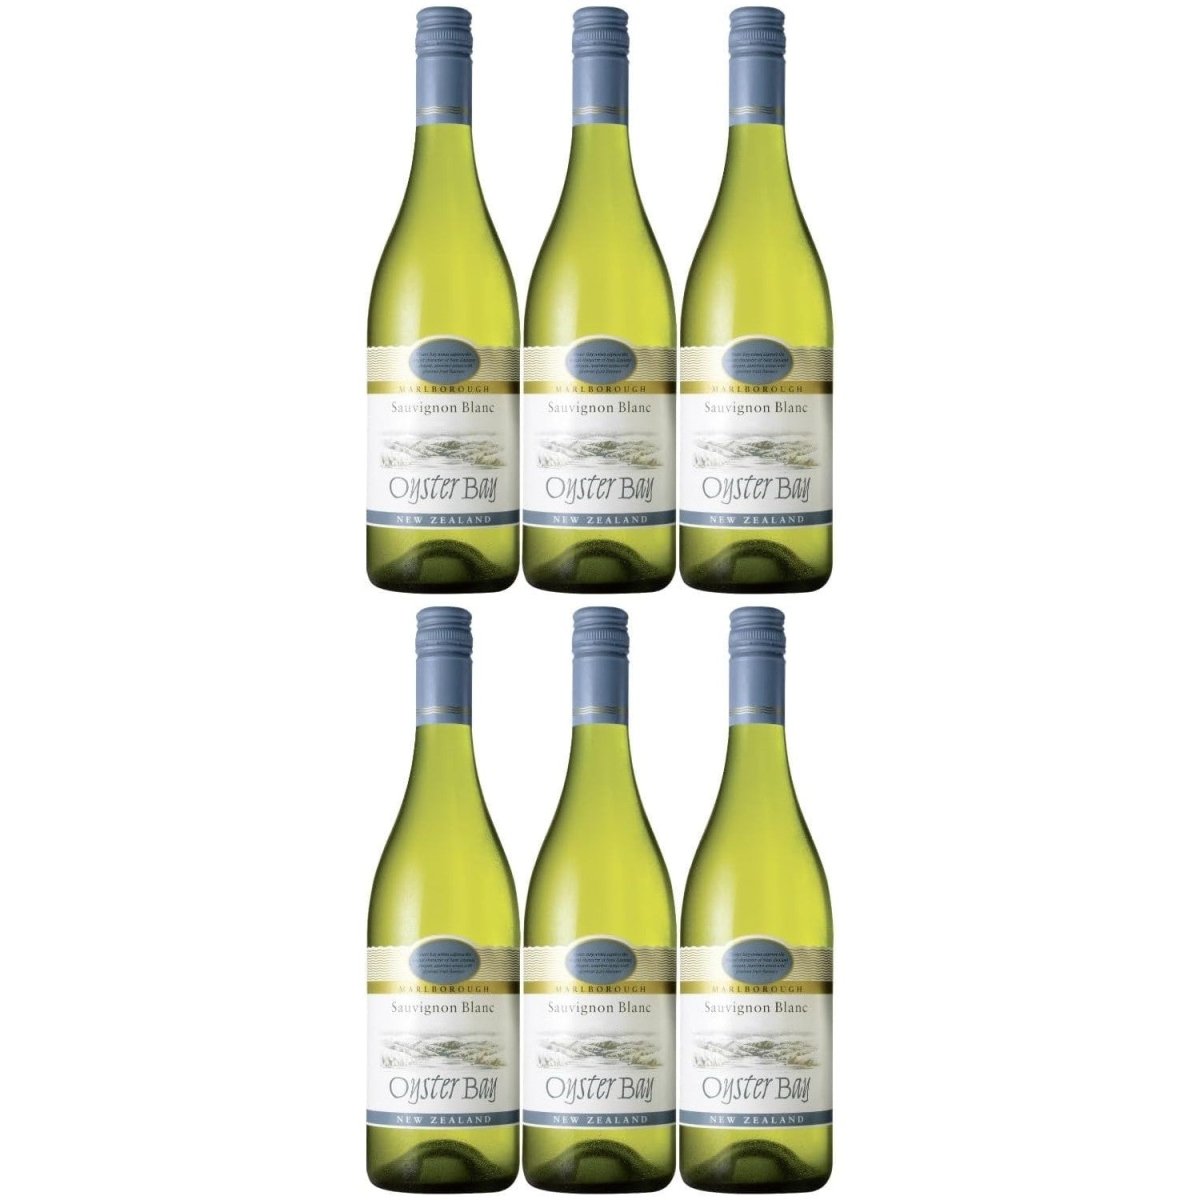 Oyster Bay Sauvignon Blanc Marlborough Weißwein Wein trocken Neuseeland (6 x 0.75l) - Versanel -